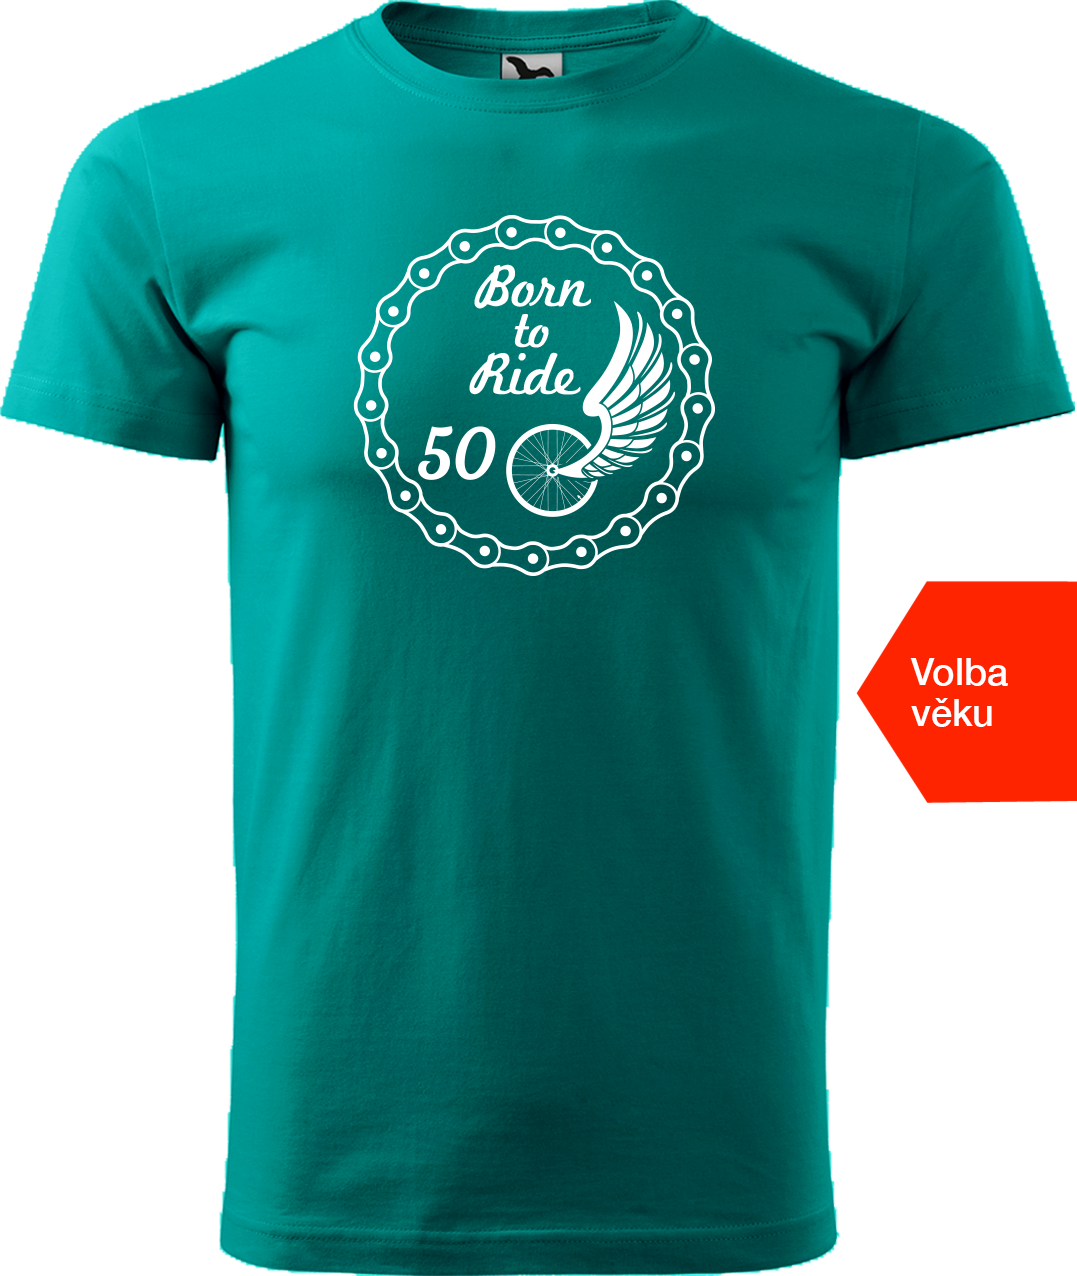 Pánské tričko pro cyklistu s věkem - Born to Ride (wings) Velikost: 4XL, Barva: Emerald (19)